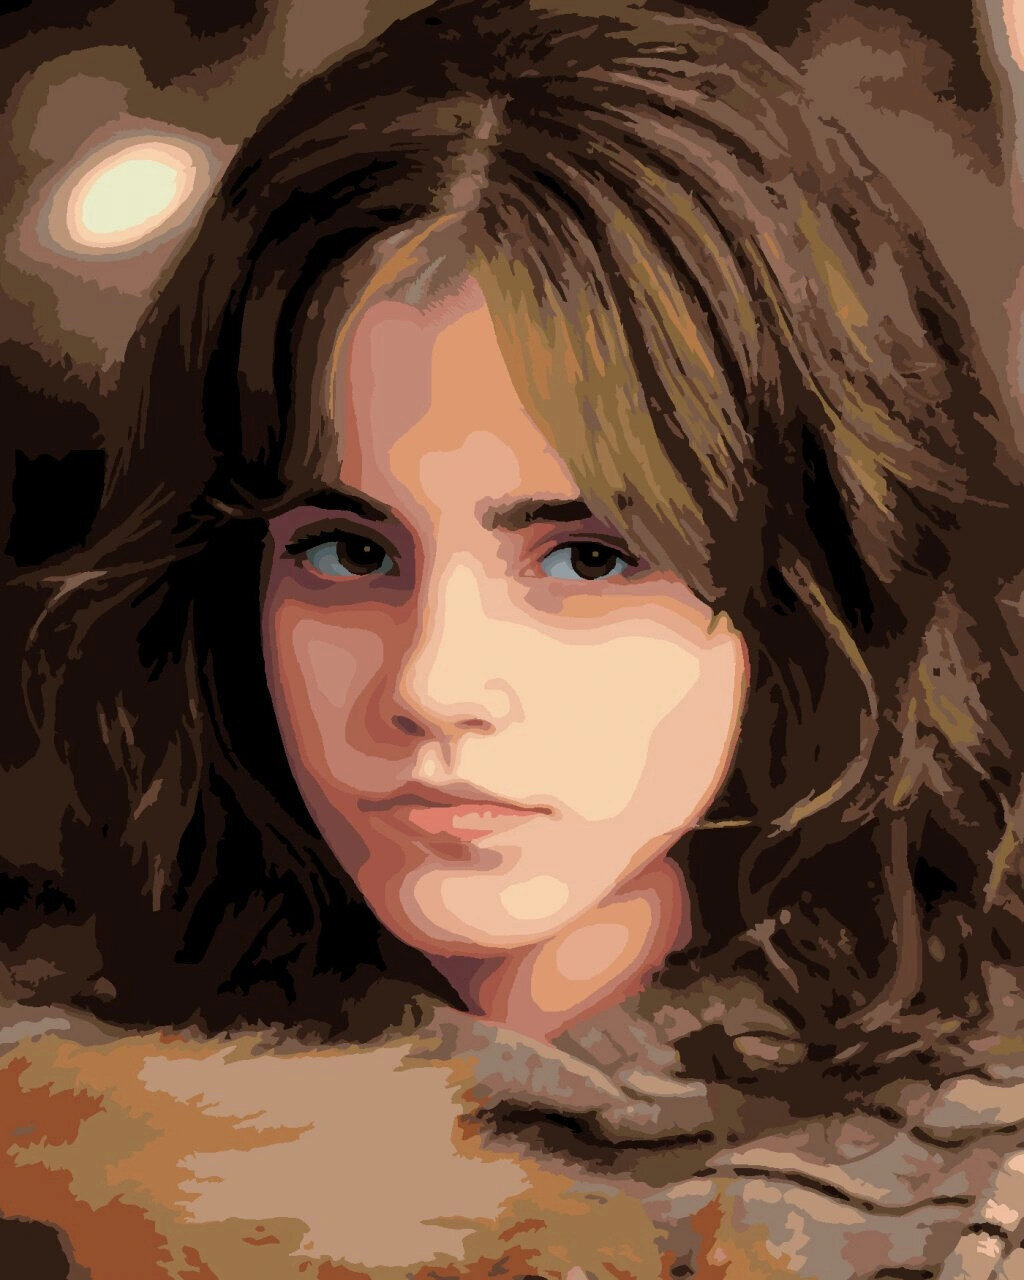 Festés számok szerint Zuty Festés számok szerint Hermione arcképe szigorú tekintettel (Harry Potter)